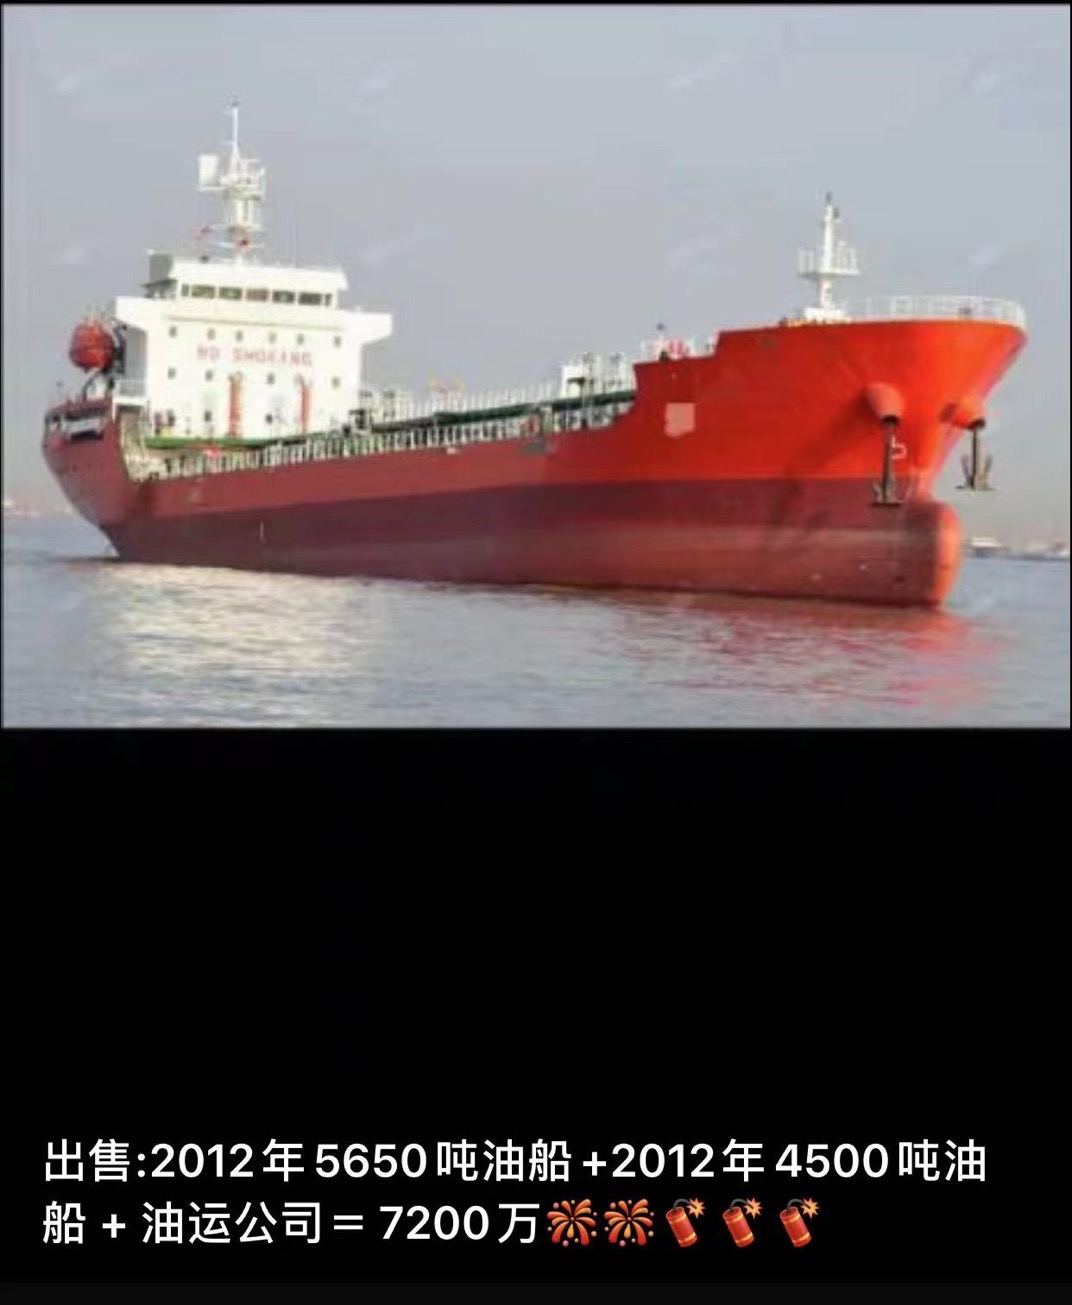 出售2012年5650吨油船+2012年4500吨油船 + 油运公司